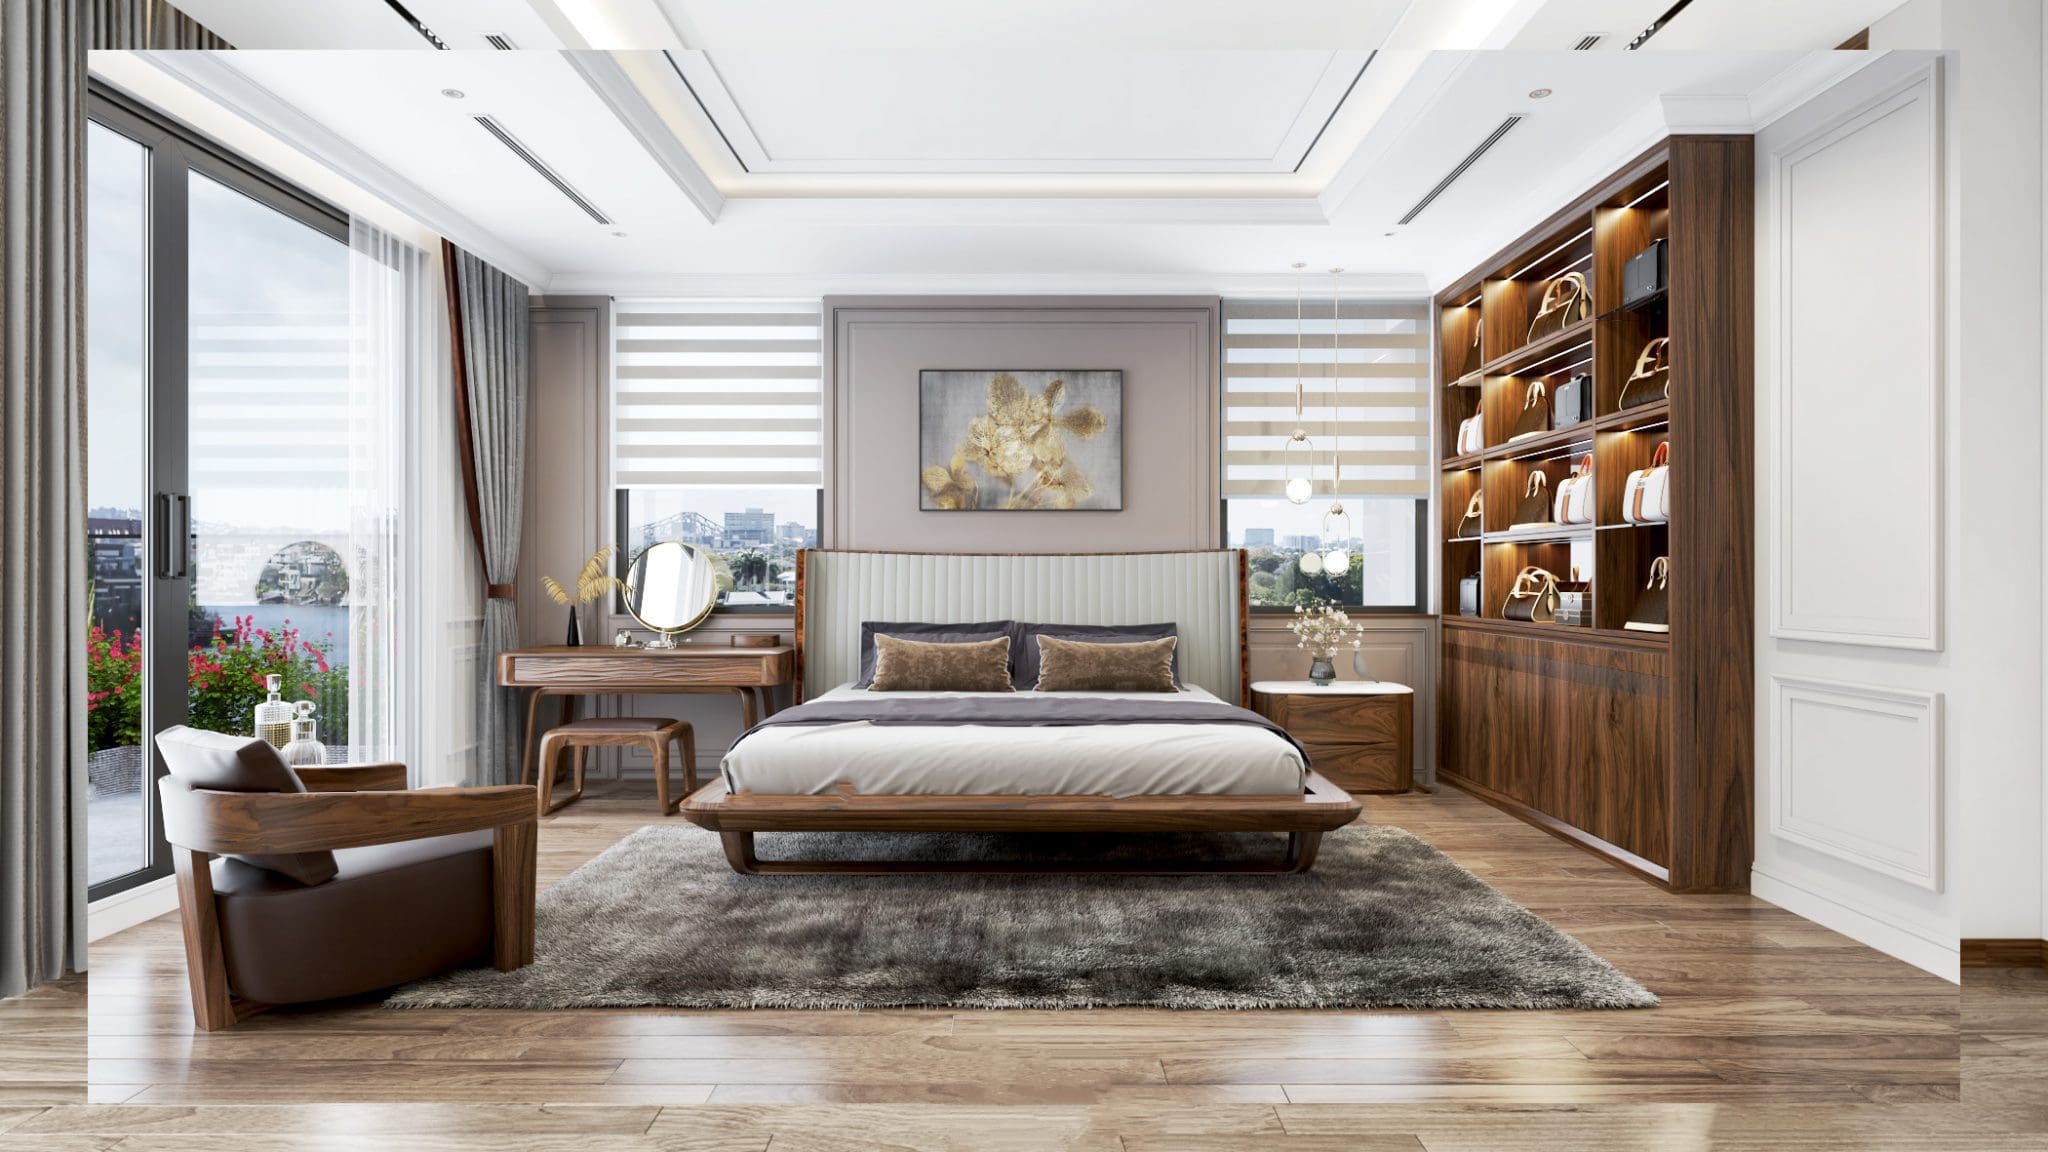 Giường ngủ gỗ óc chó thiết kế đẹp của An Hưng.